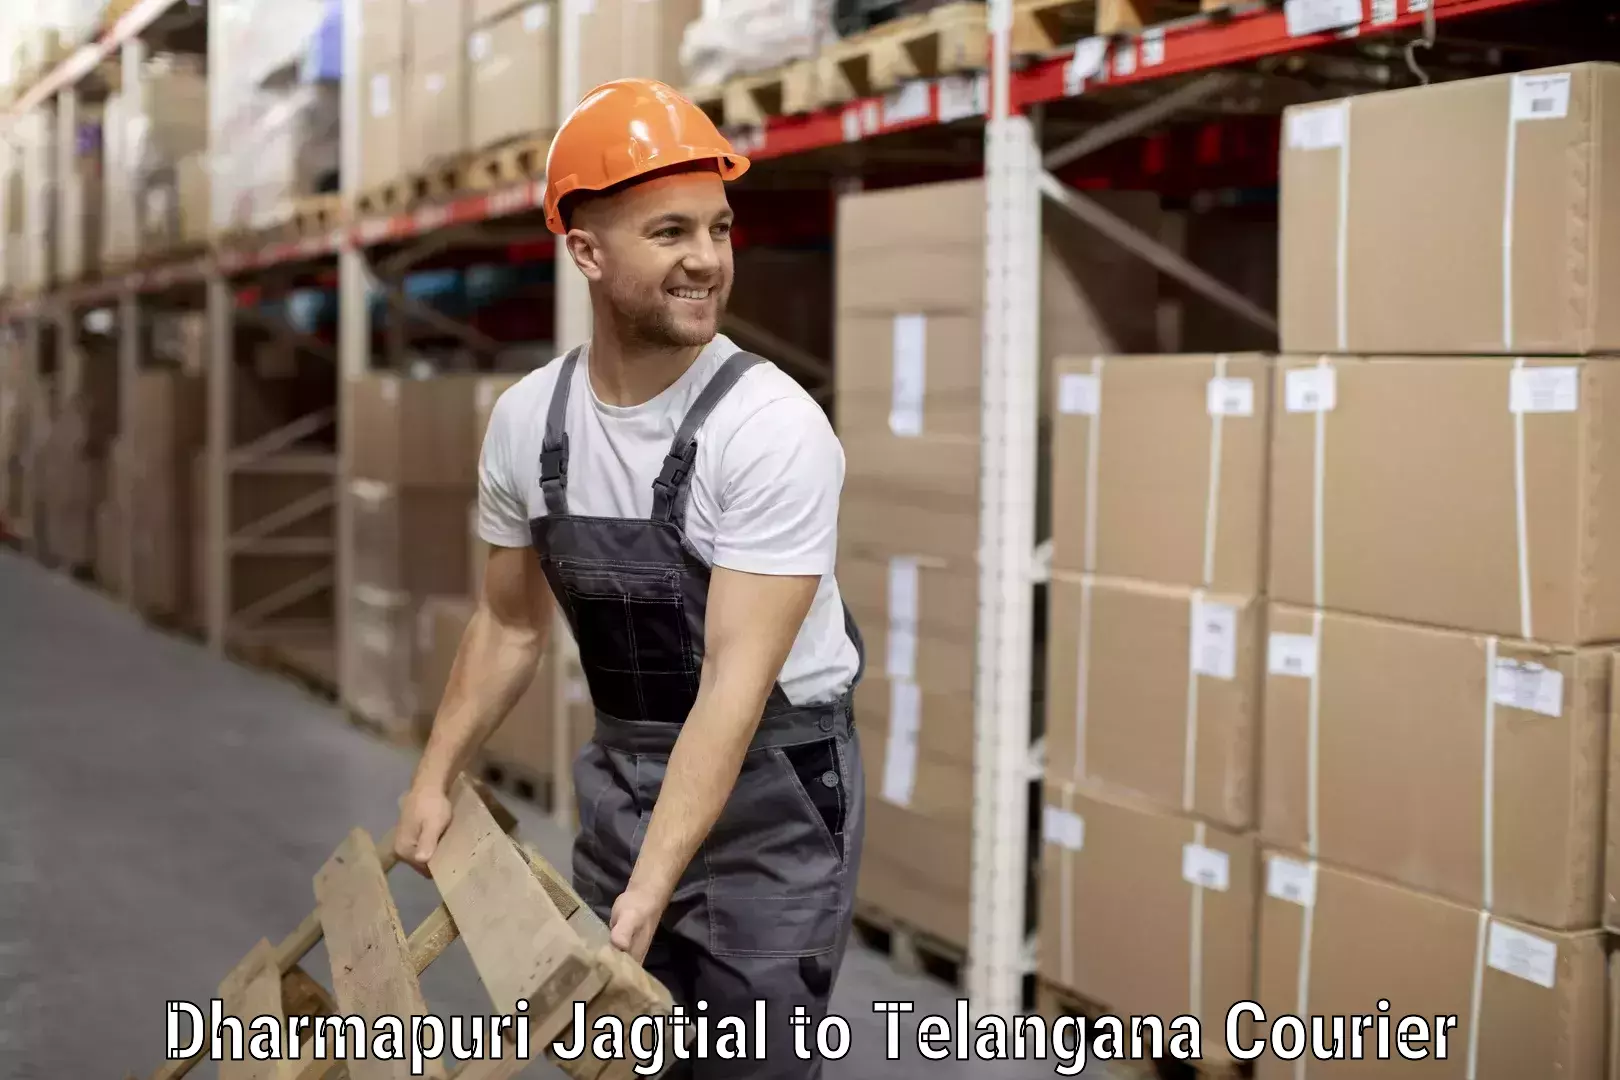 Scheduled baggage courier Dharmapuri Jagtial to Telangana